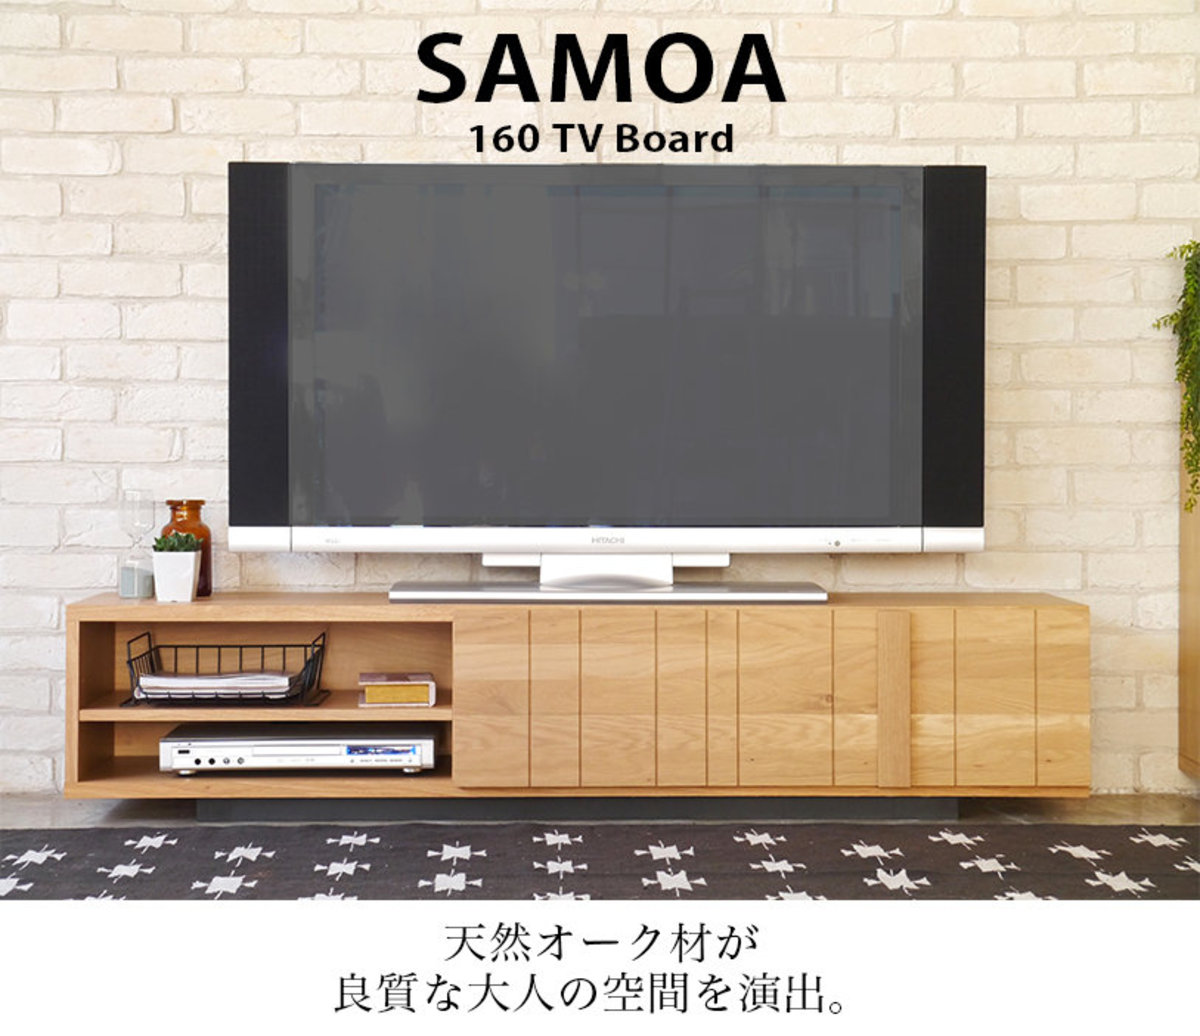 日本製GART SAMOA 160淺橡木色電視櫃